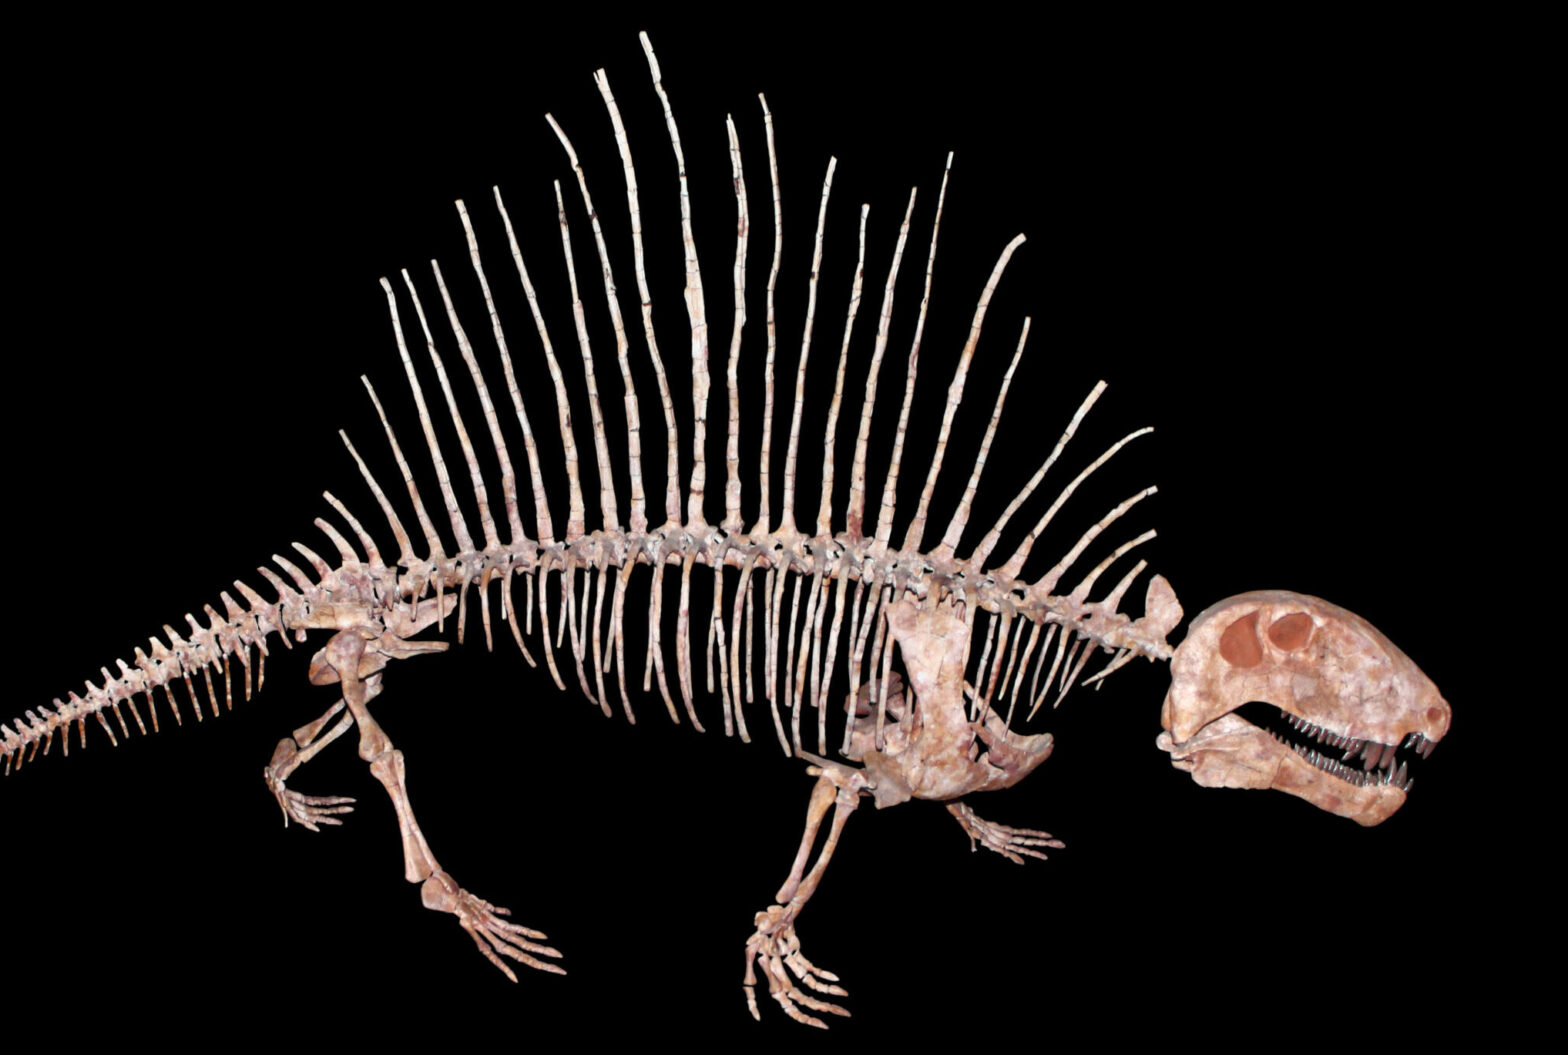 Lateral view of Dimetrodon skeleton